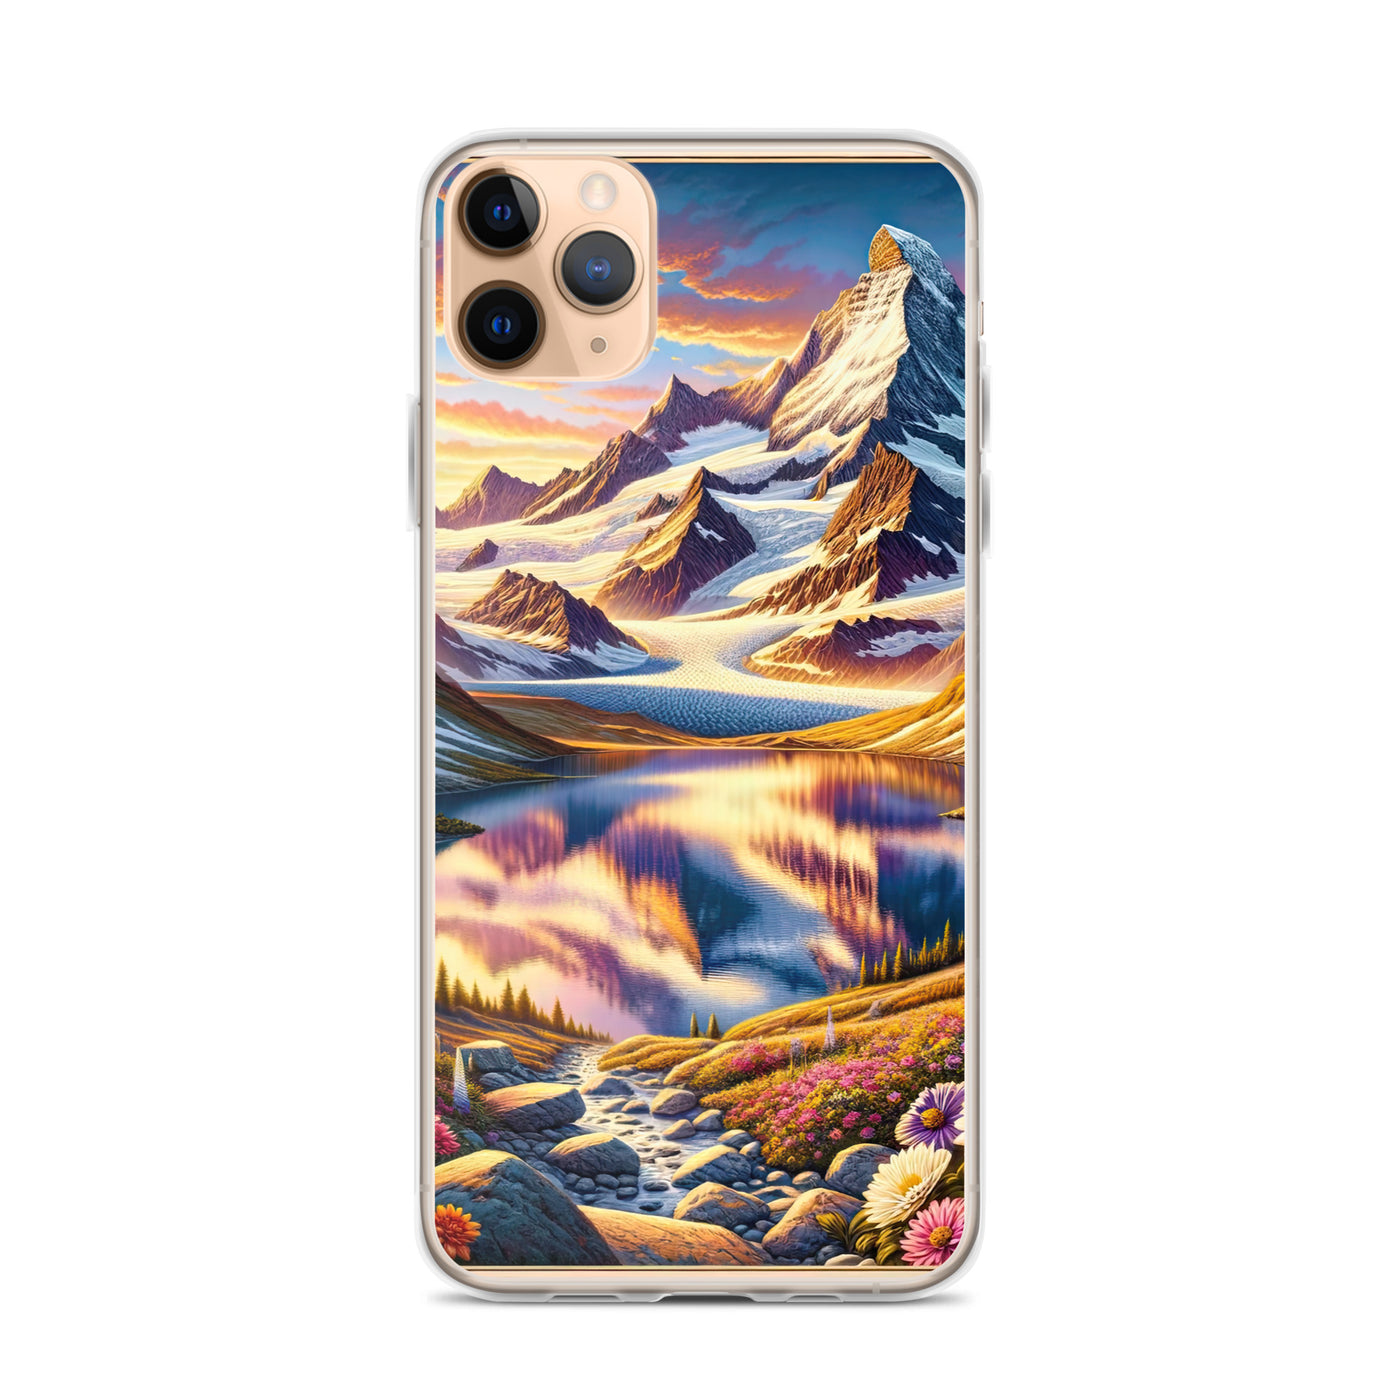 Quadratische Illustration der Alpen mit schneebedeckten Gipfeln und Wildblumen - iPhone Schutzhülle (durchsichtig) berge xxx yyy zzz iPhone 11 Pro Max